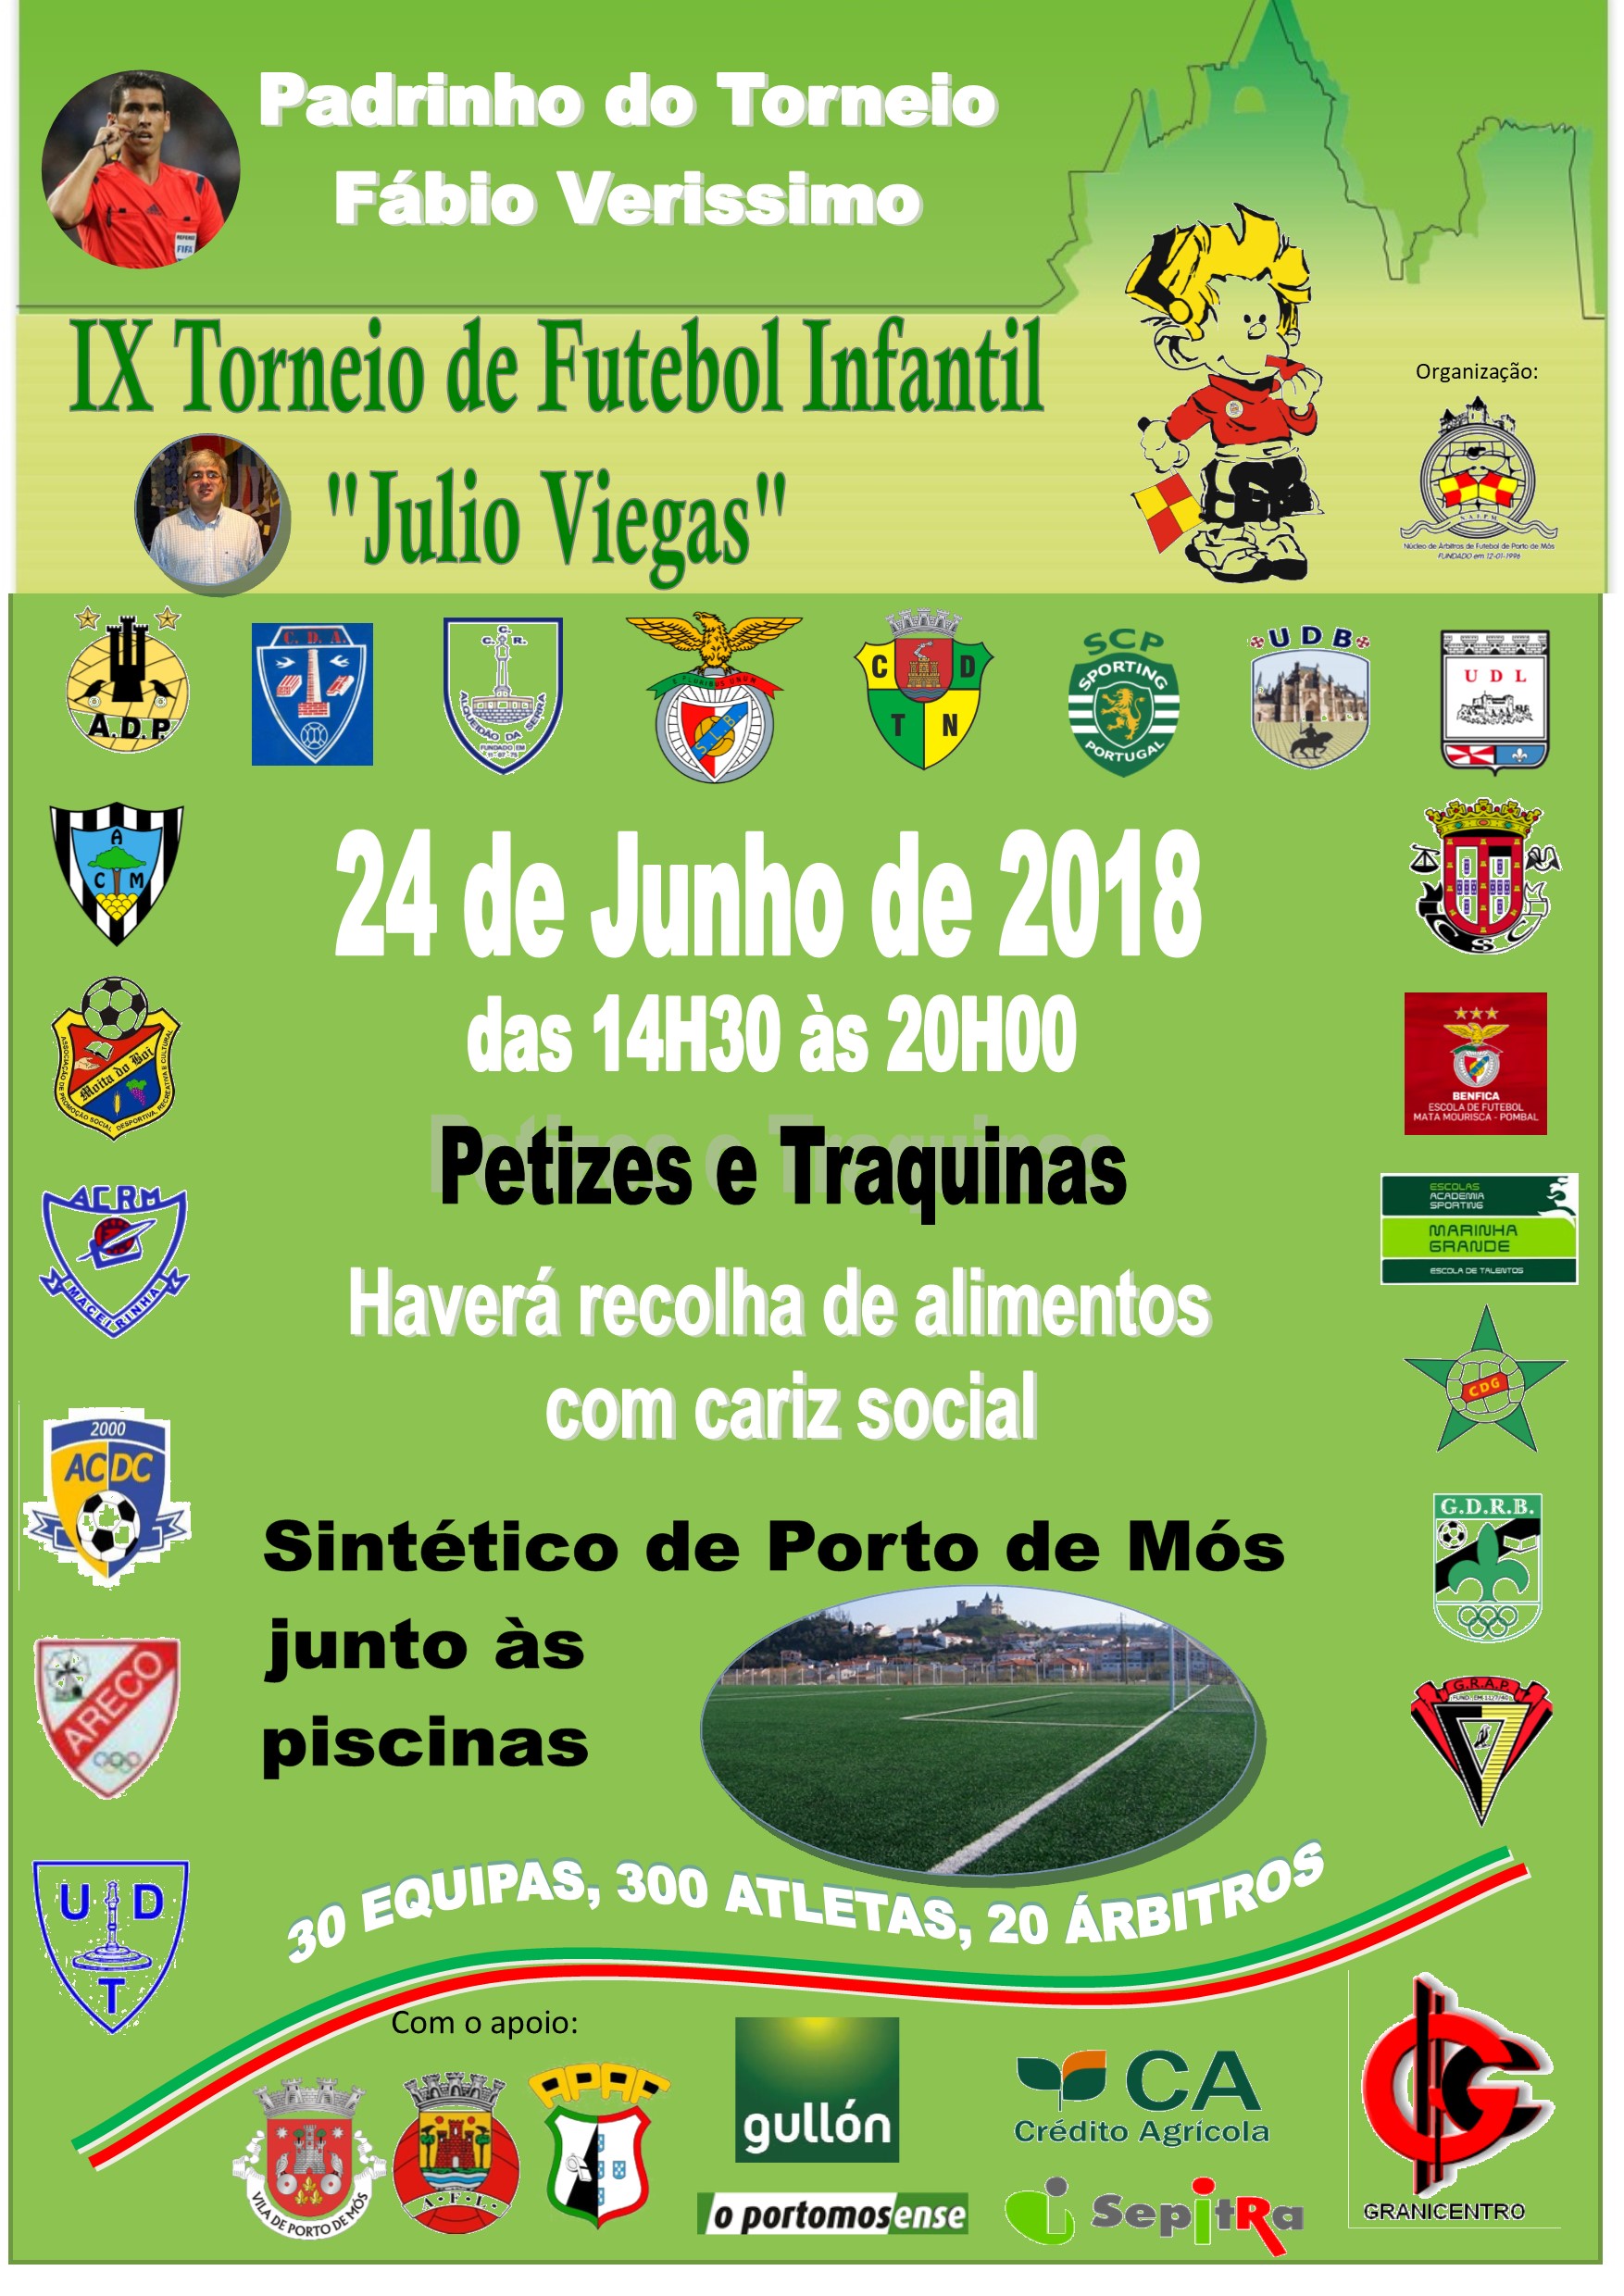 IX Torneio de Futebol Infantil "Júlio Viegas"!